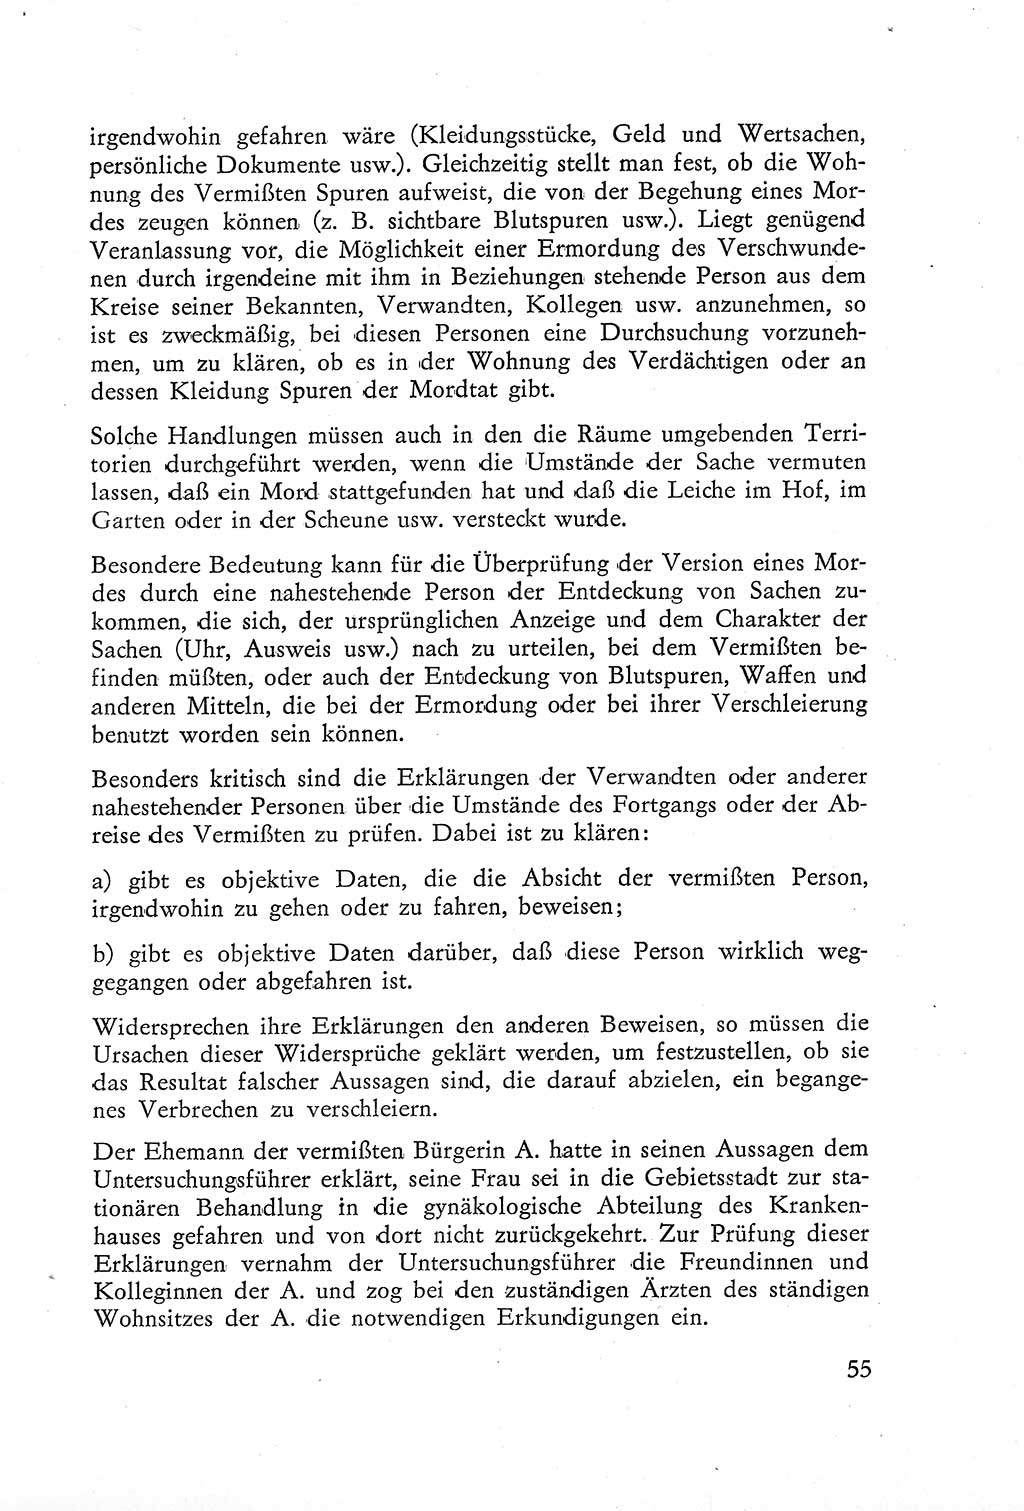 Die Untersuchung einzelner Verbrechensarten [Deutsche Demokratische Republik (DDR)] 1960, Seite 55 (Unters. Verbr.-Art. DDR 1960, S. 55)